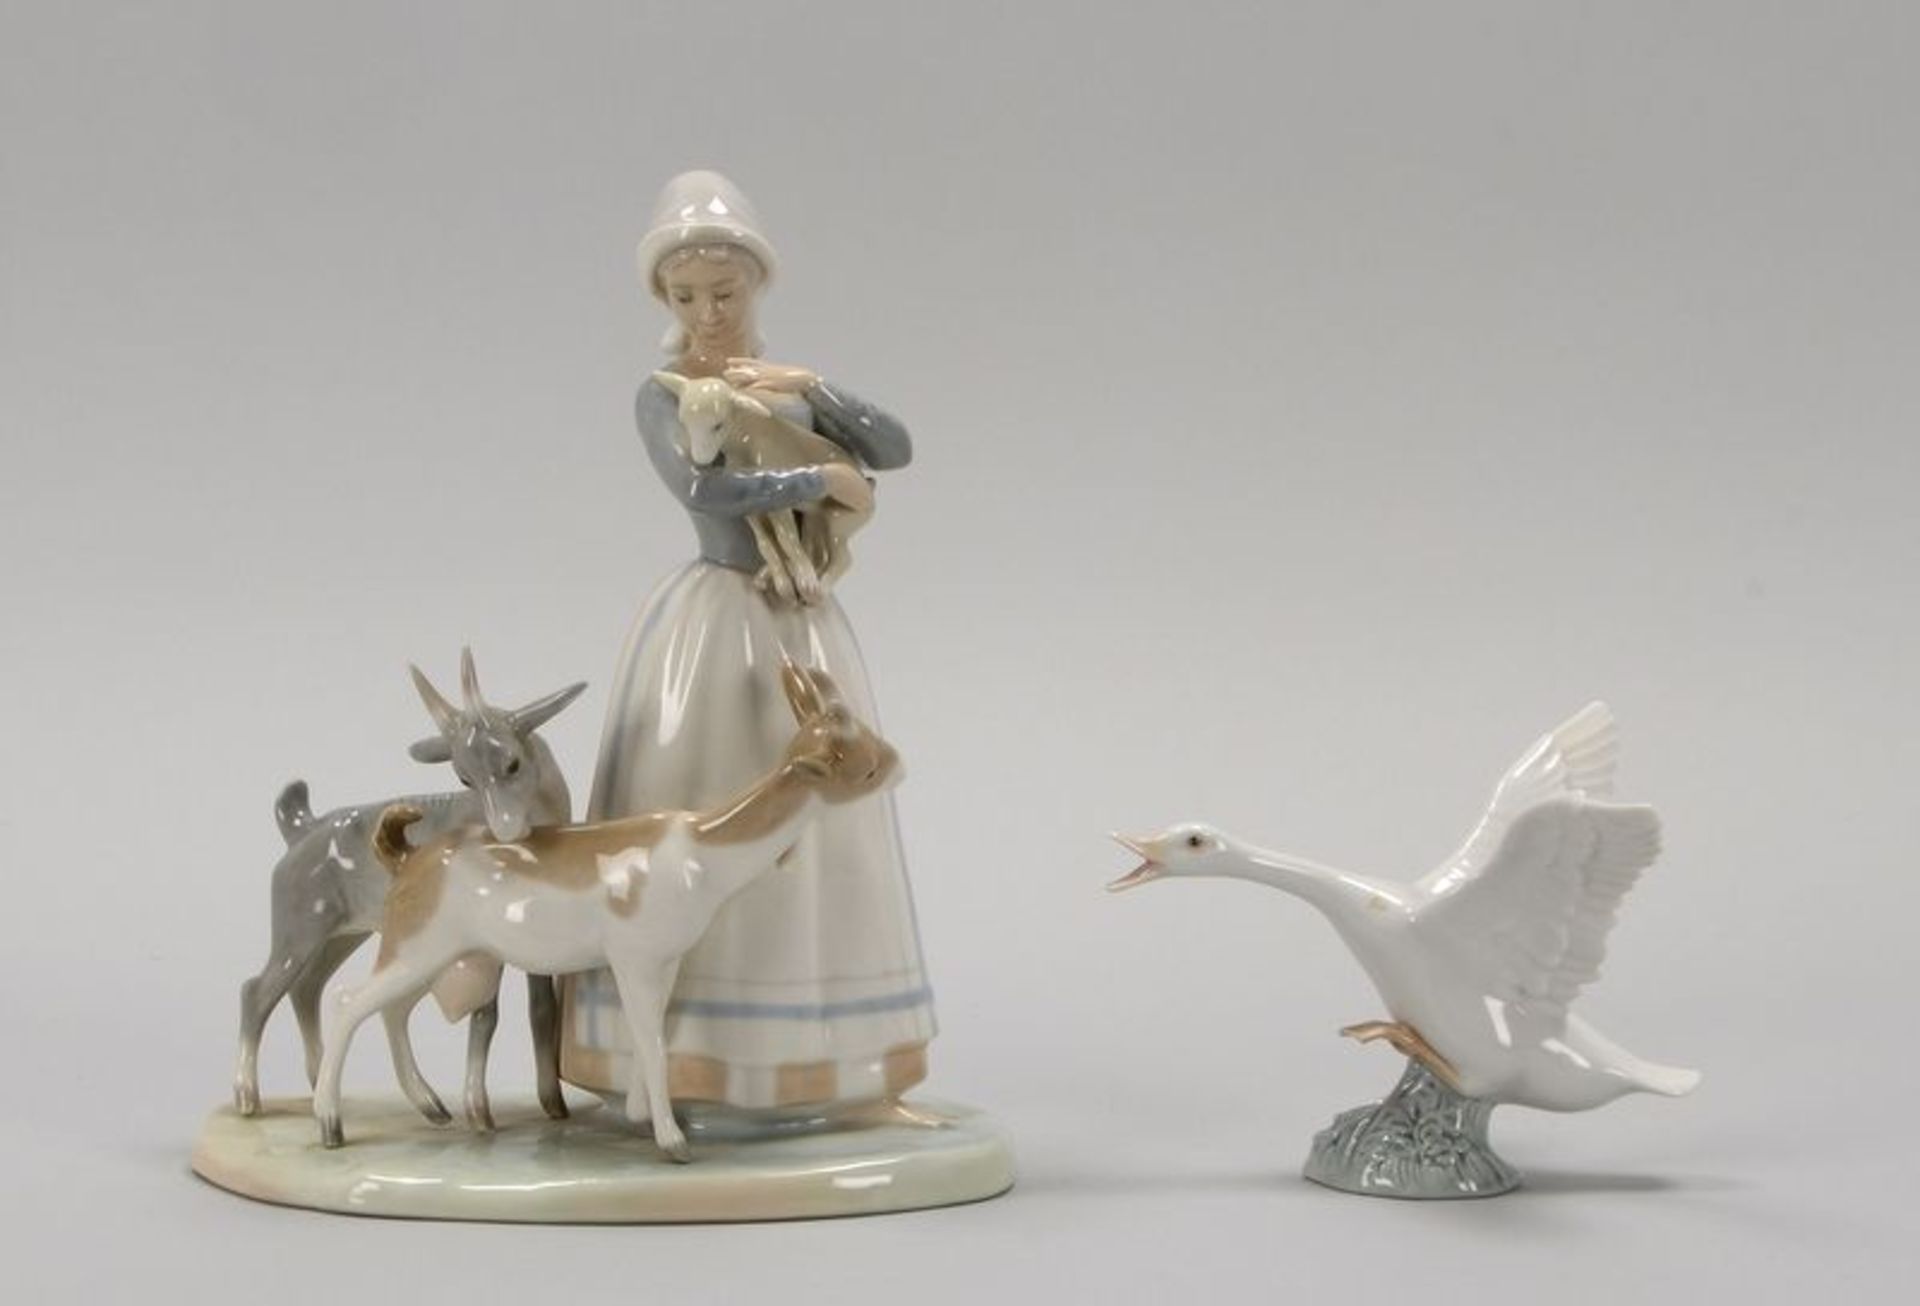 Lladro/Spanien, 2 Porzellanfiguren, pastellfarben staffiert, gemarkt: 1x 'Junge Frau mit Ziegen und